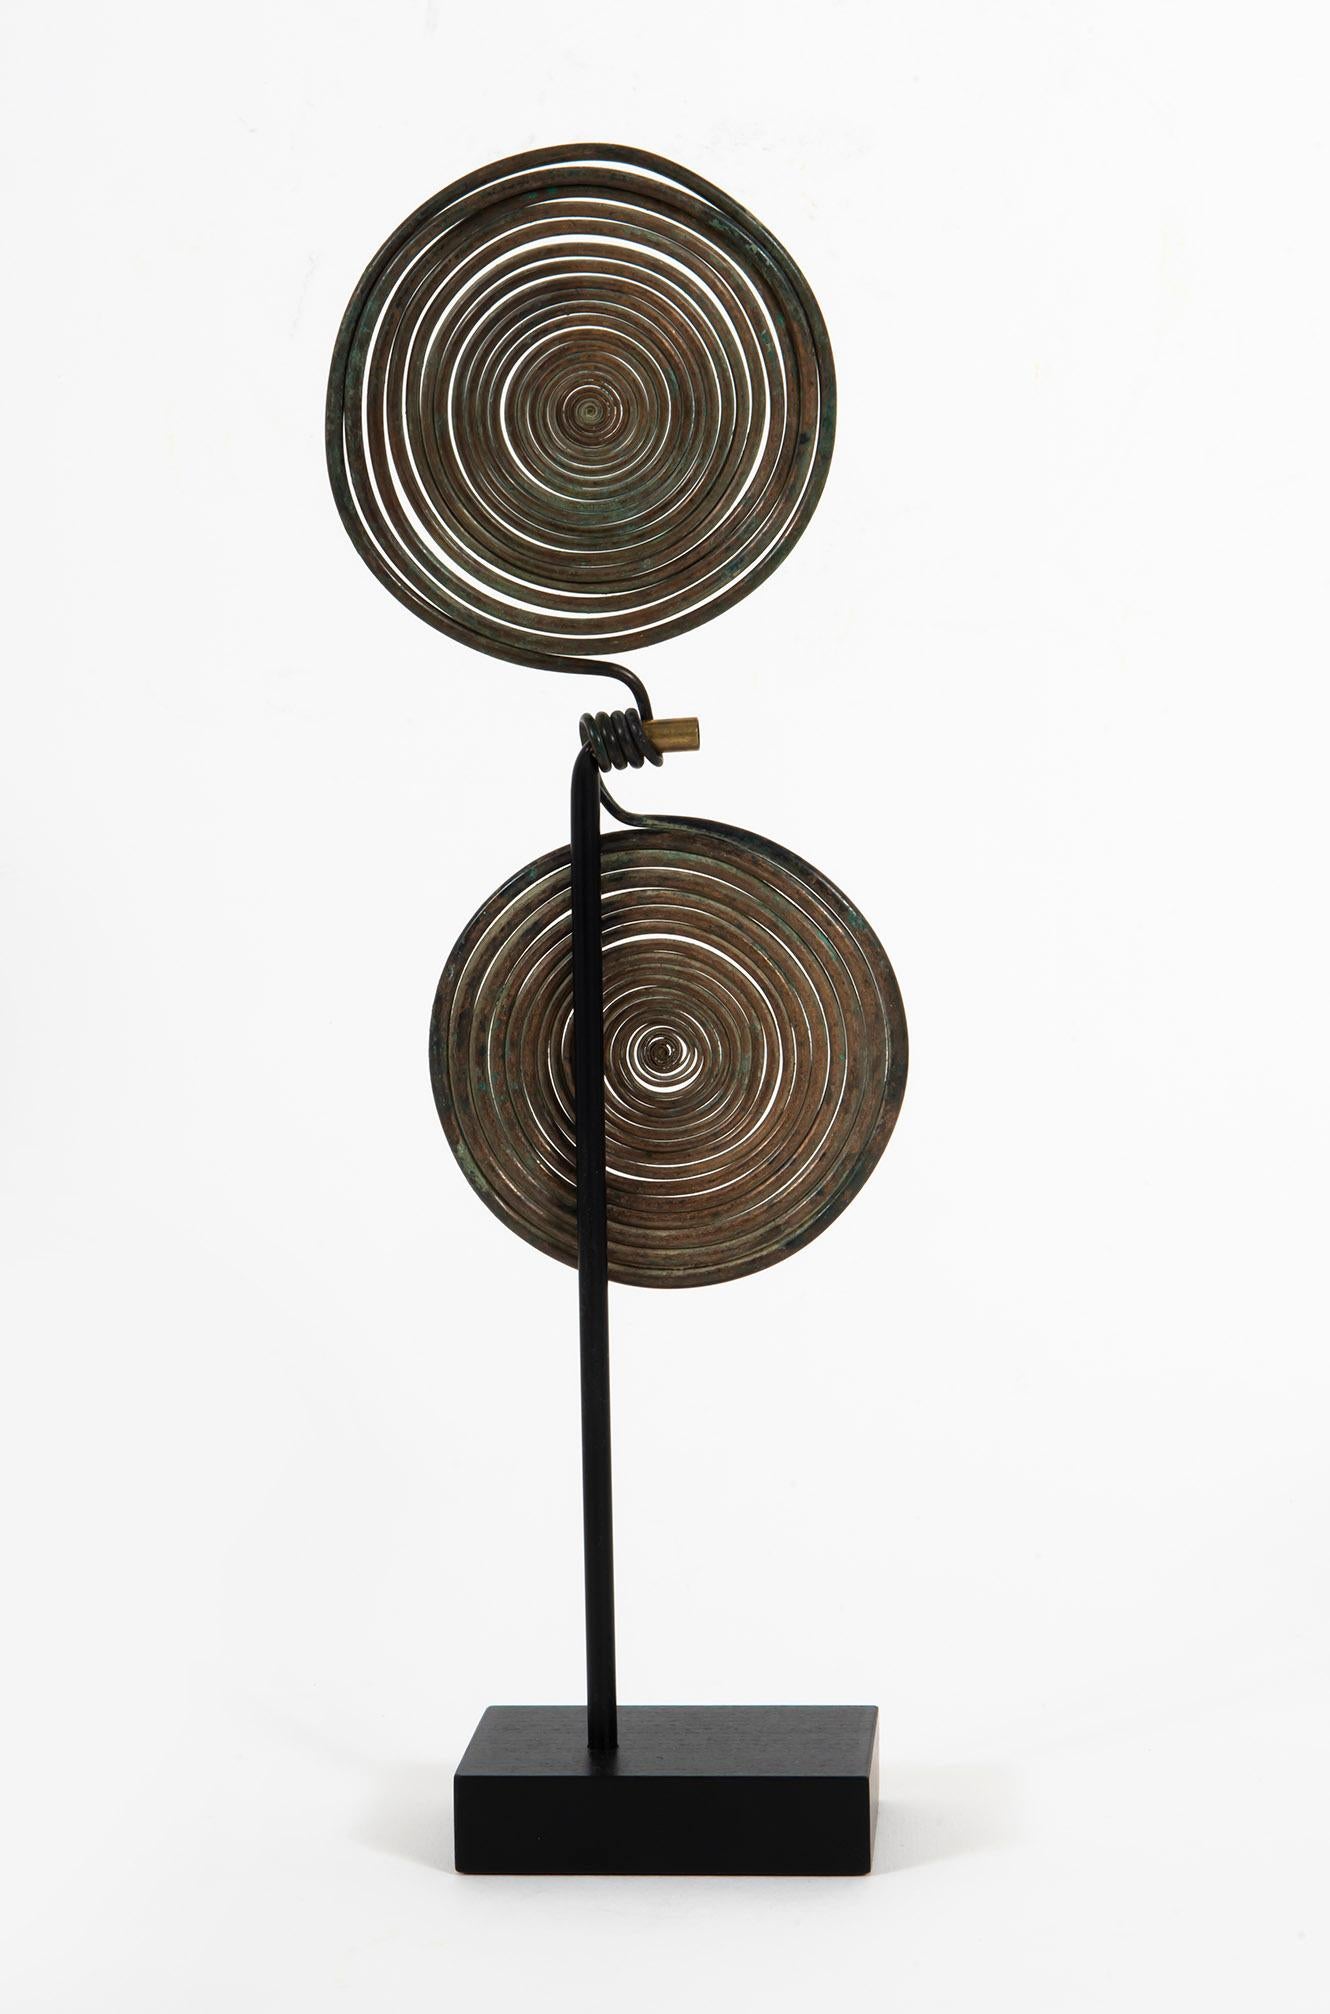 Spiralfibula, Hallstatt, 1. Eisenzeitalter, Bronze, Skulptur, Design, Antike – Art von Unknown